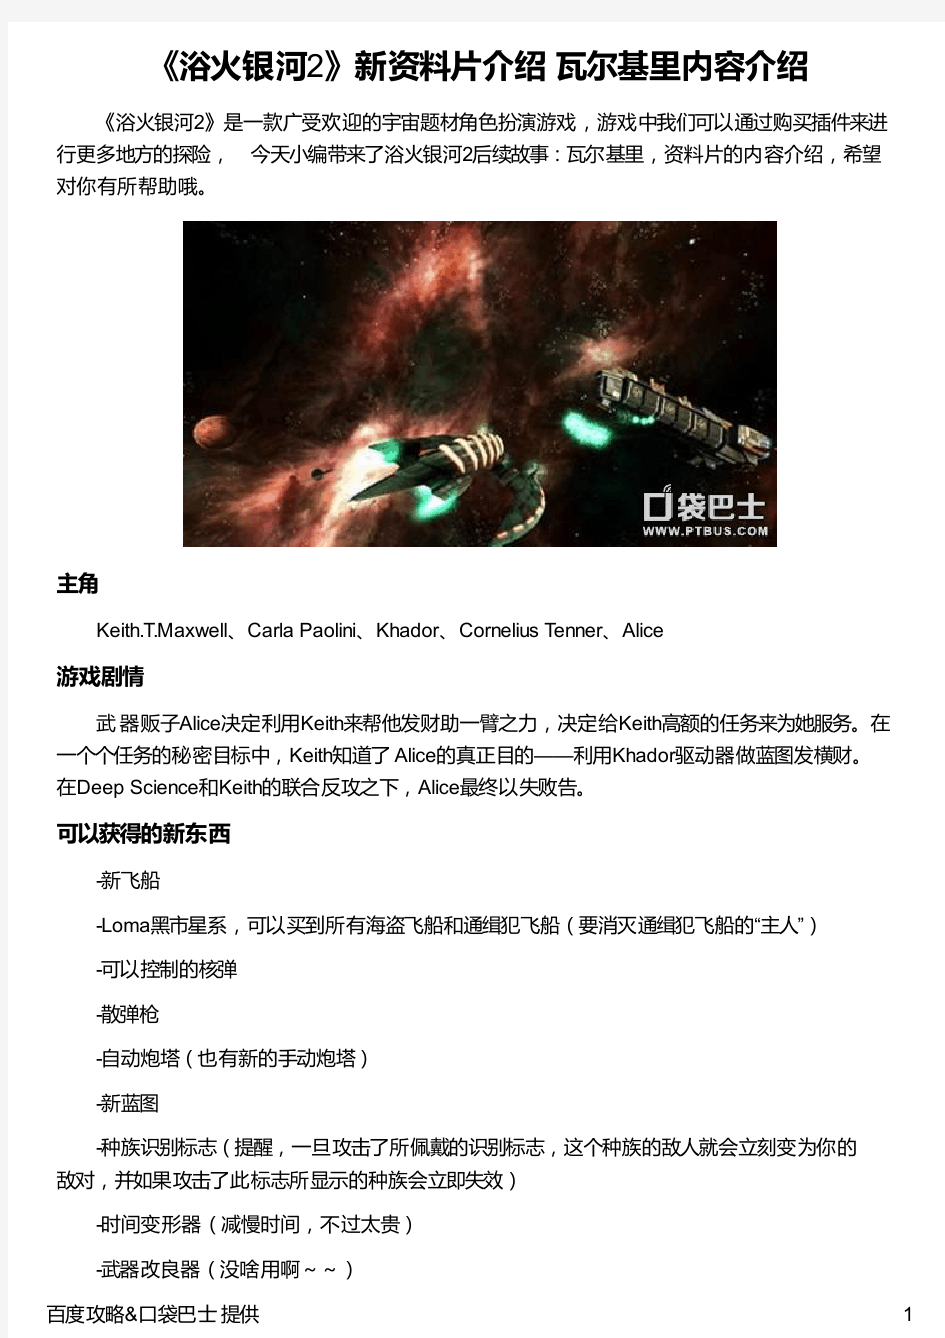 《浴火银河2》新资料片介绍 瓦尔基里内容介绍